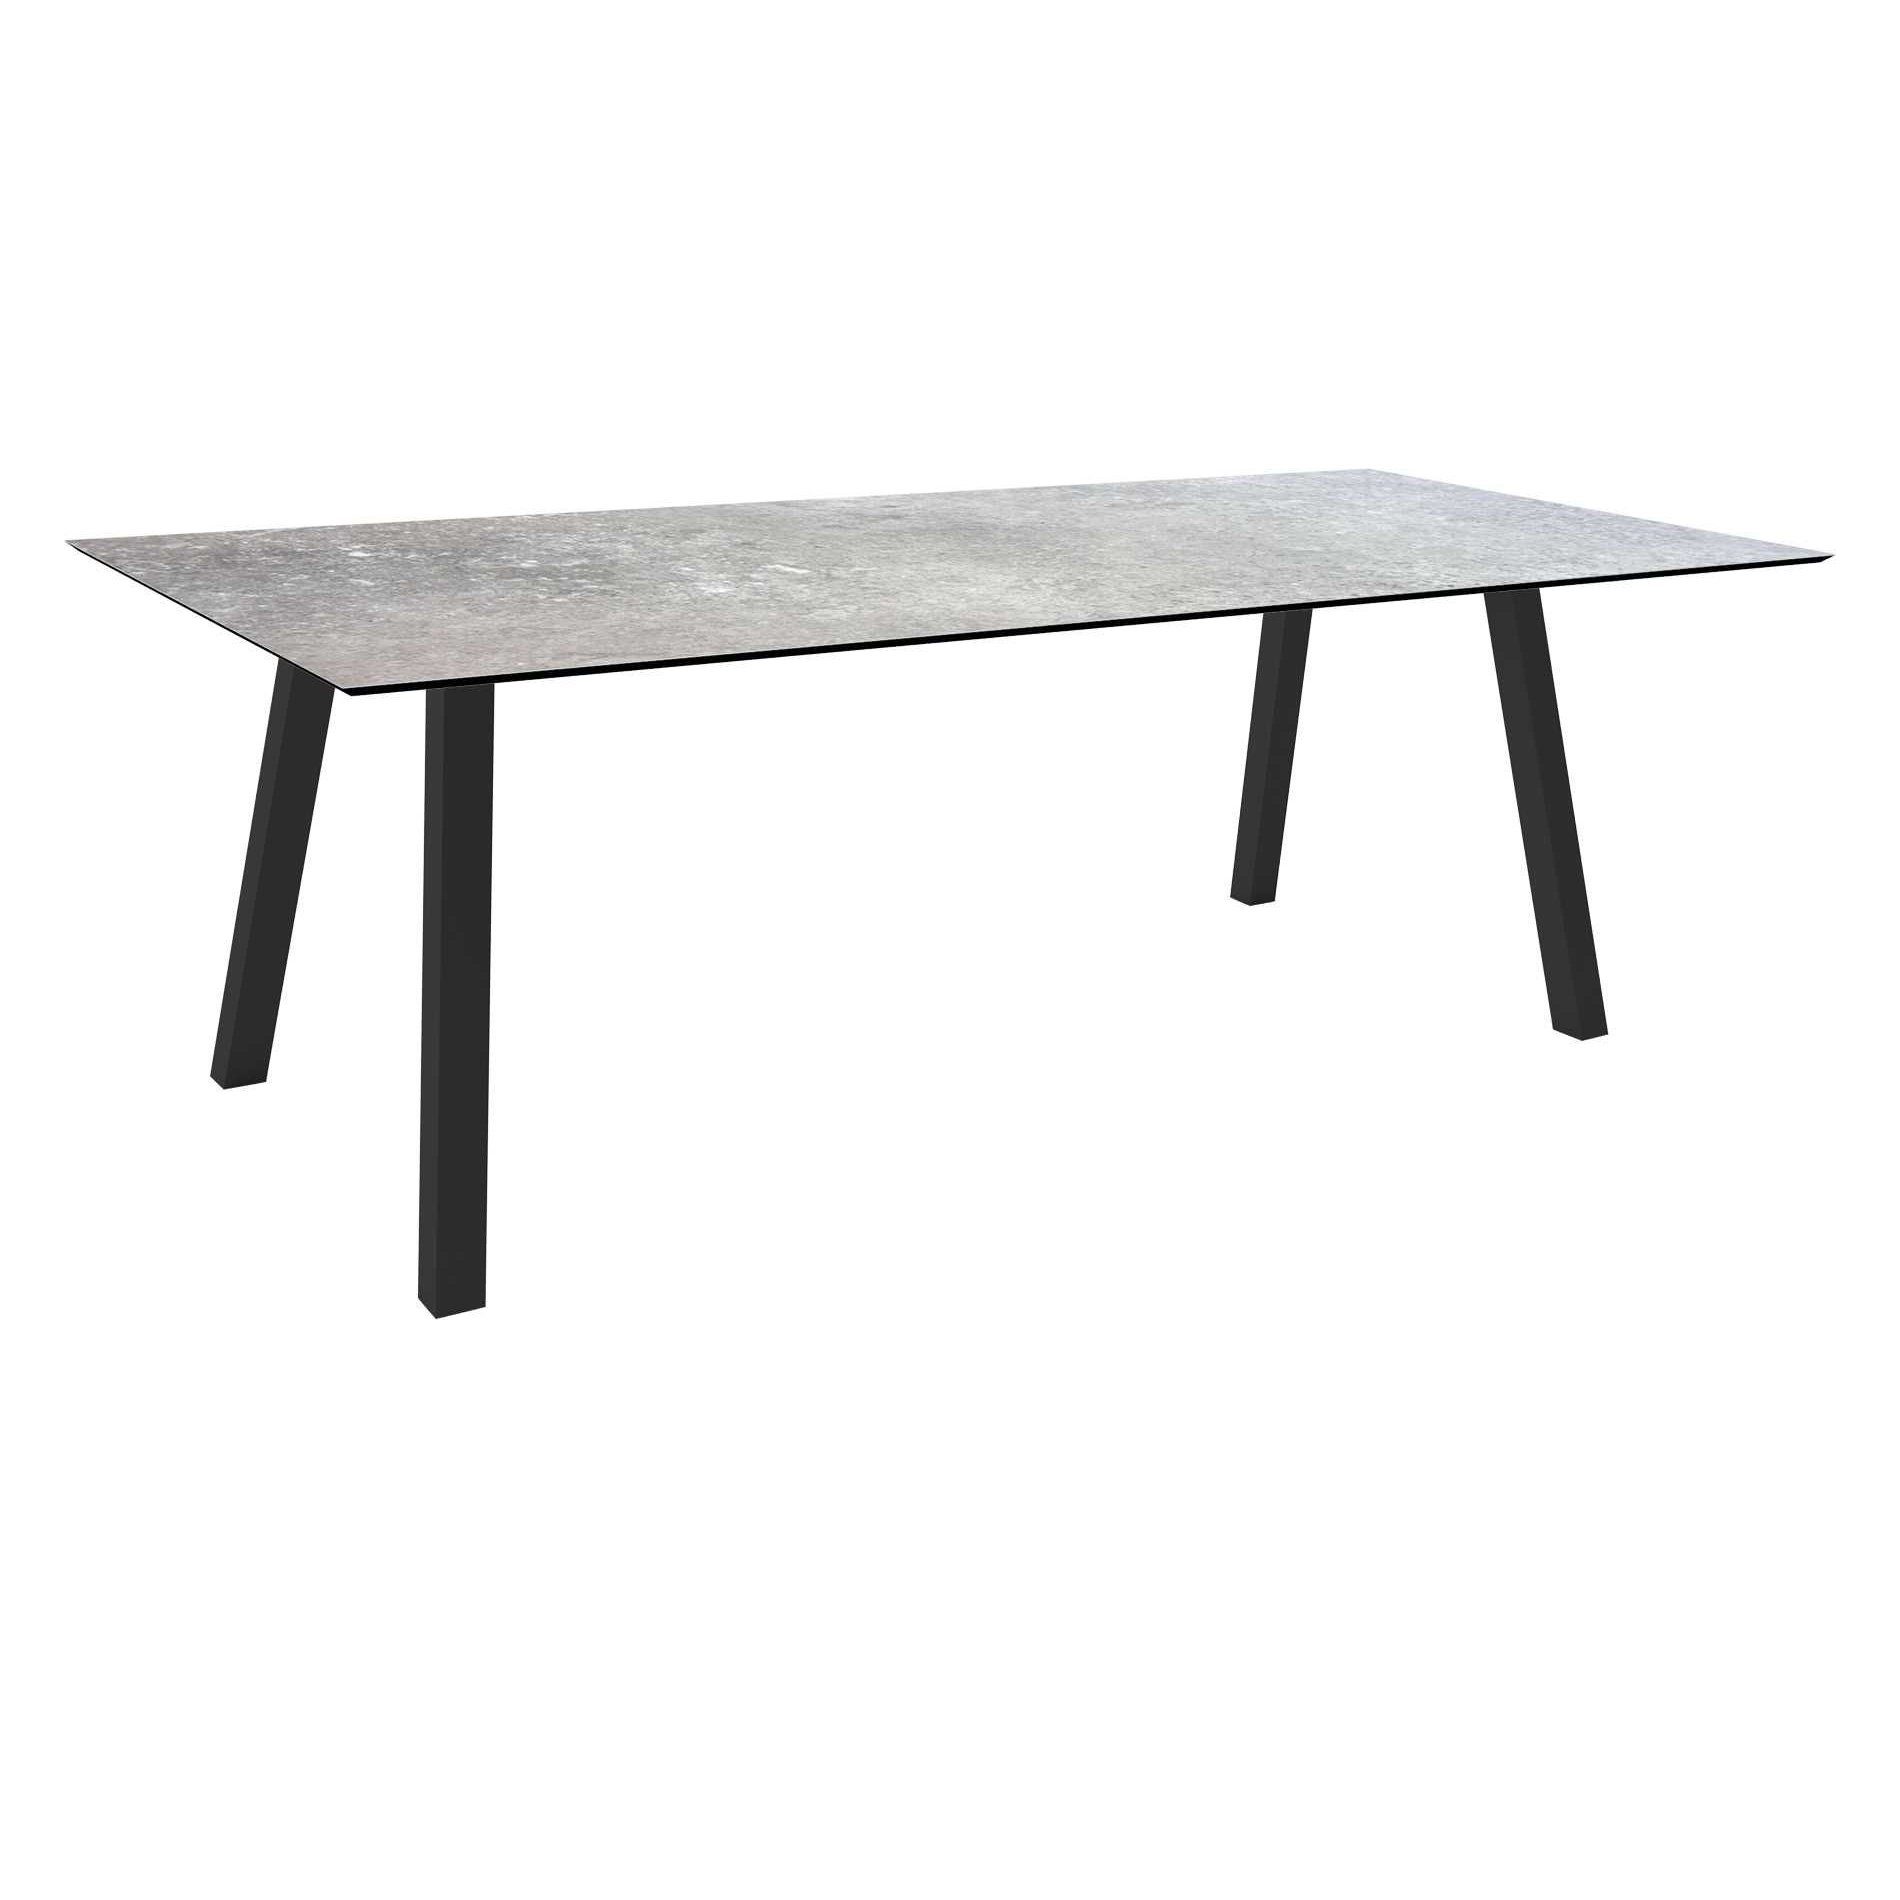 Stern Tisch "Interno", Größe 220x100cm, Alu anthrazit, Vierkantrohr, Tischplatte HPL Vintage Stone